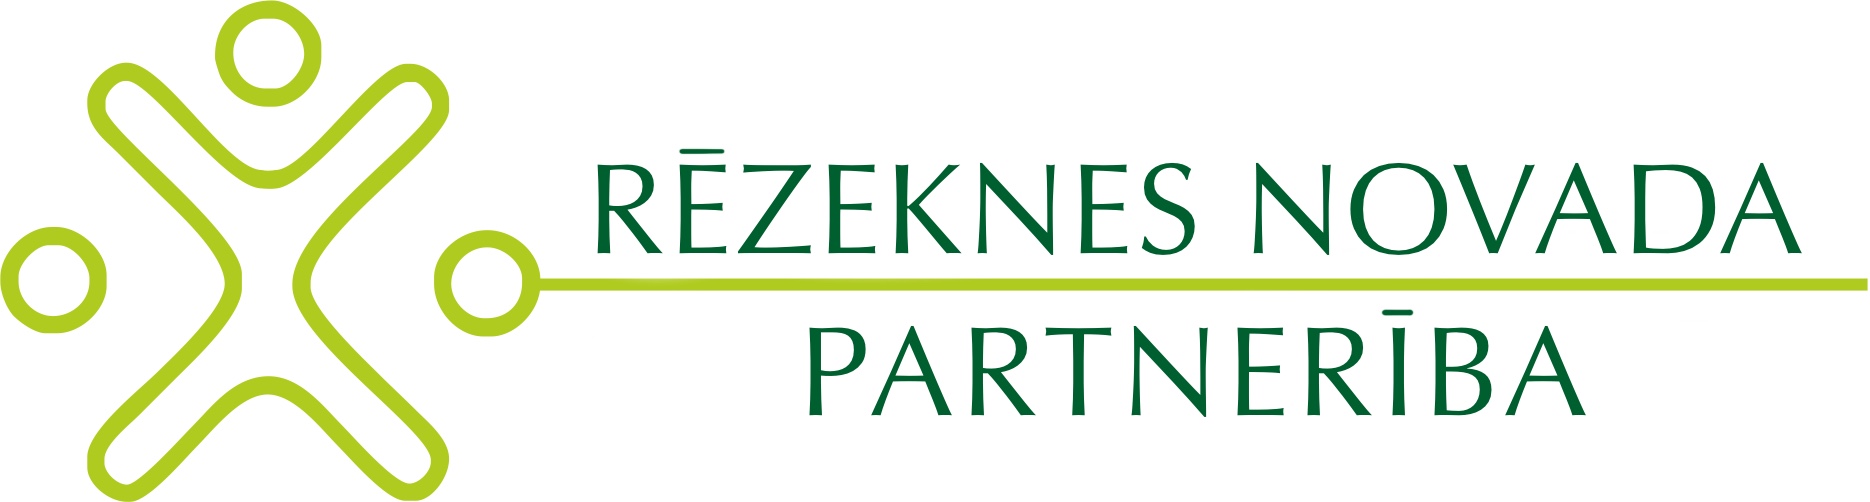 Partneriba logo